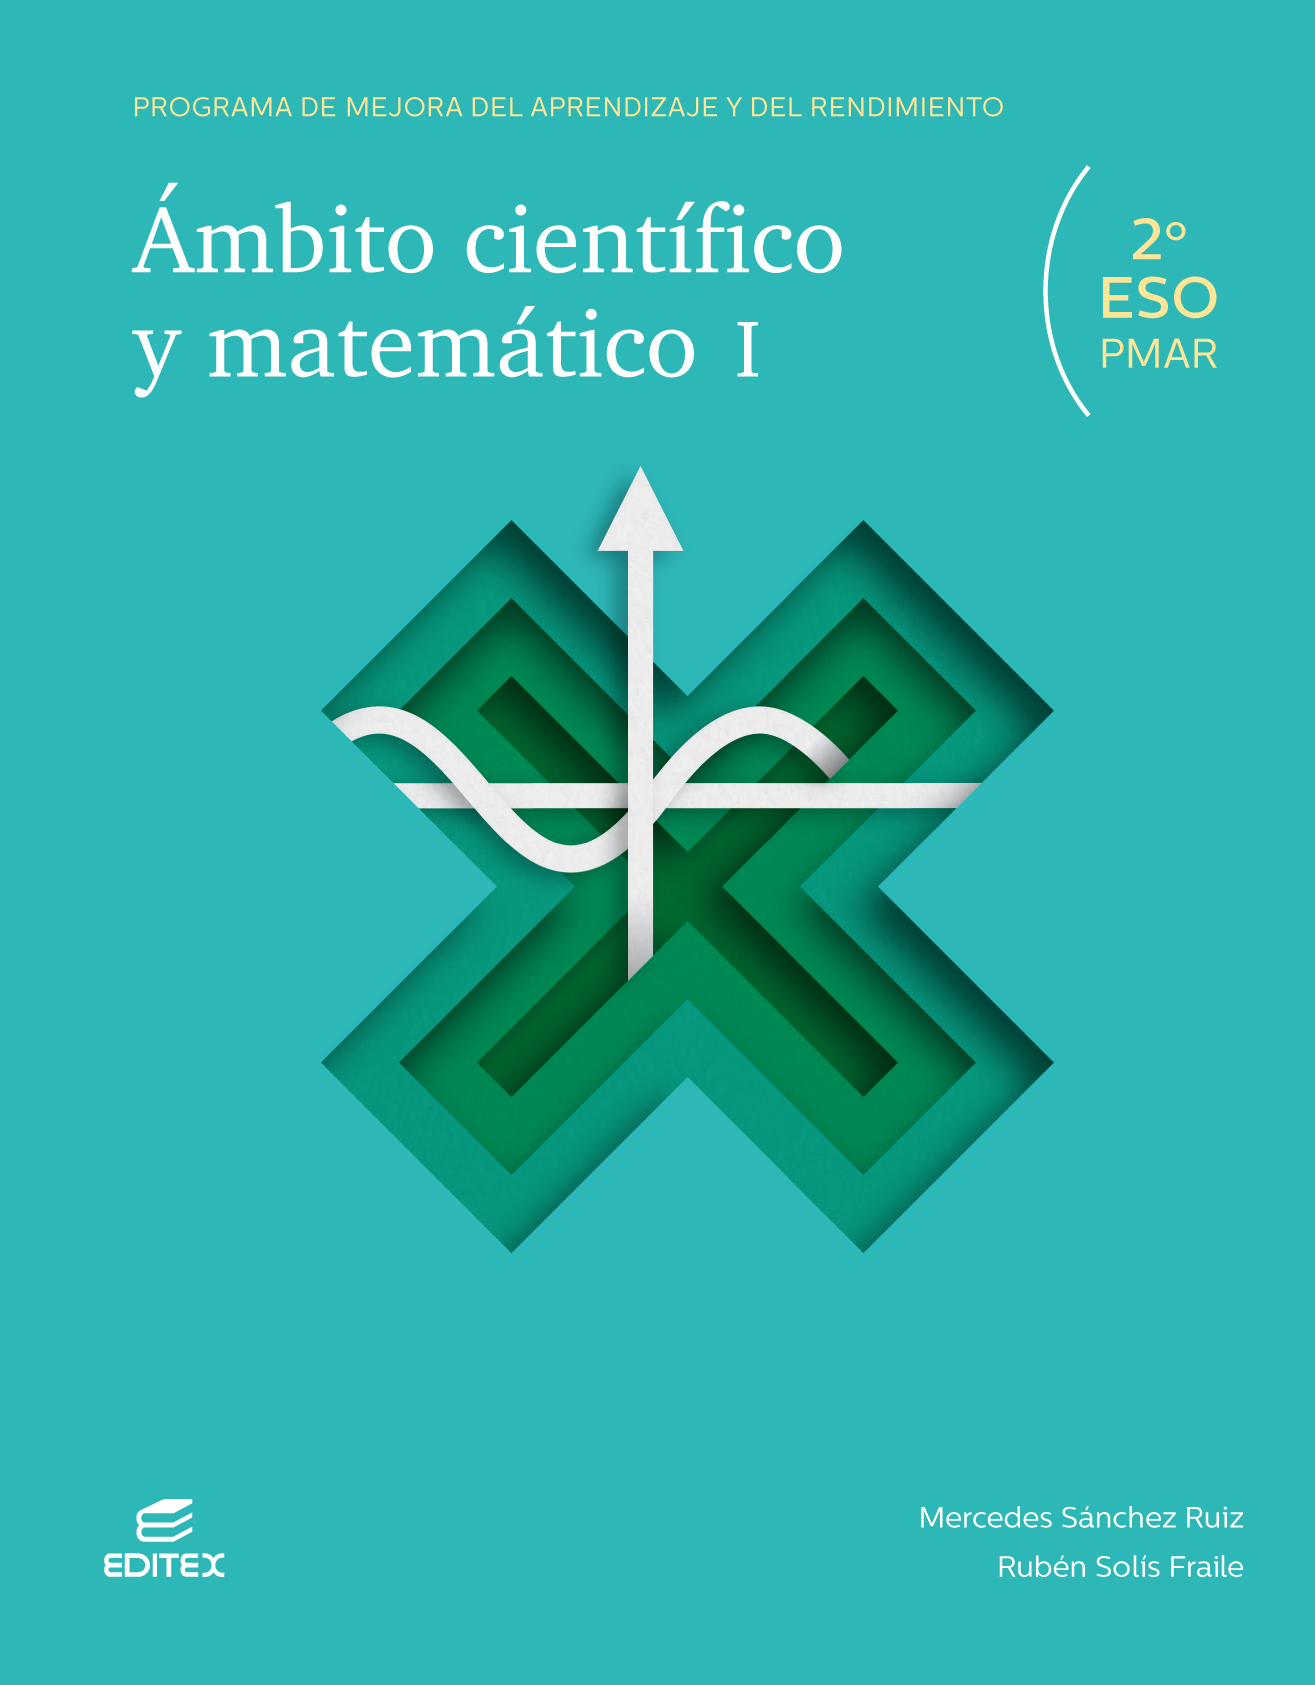 PMAR - Ámbito científico y matemático I (2019)